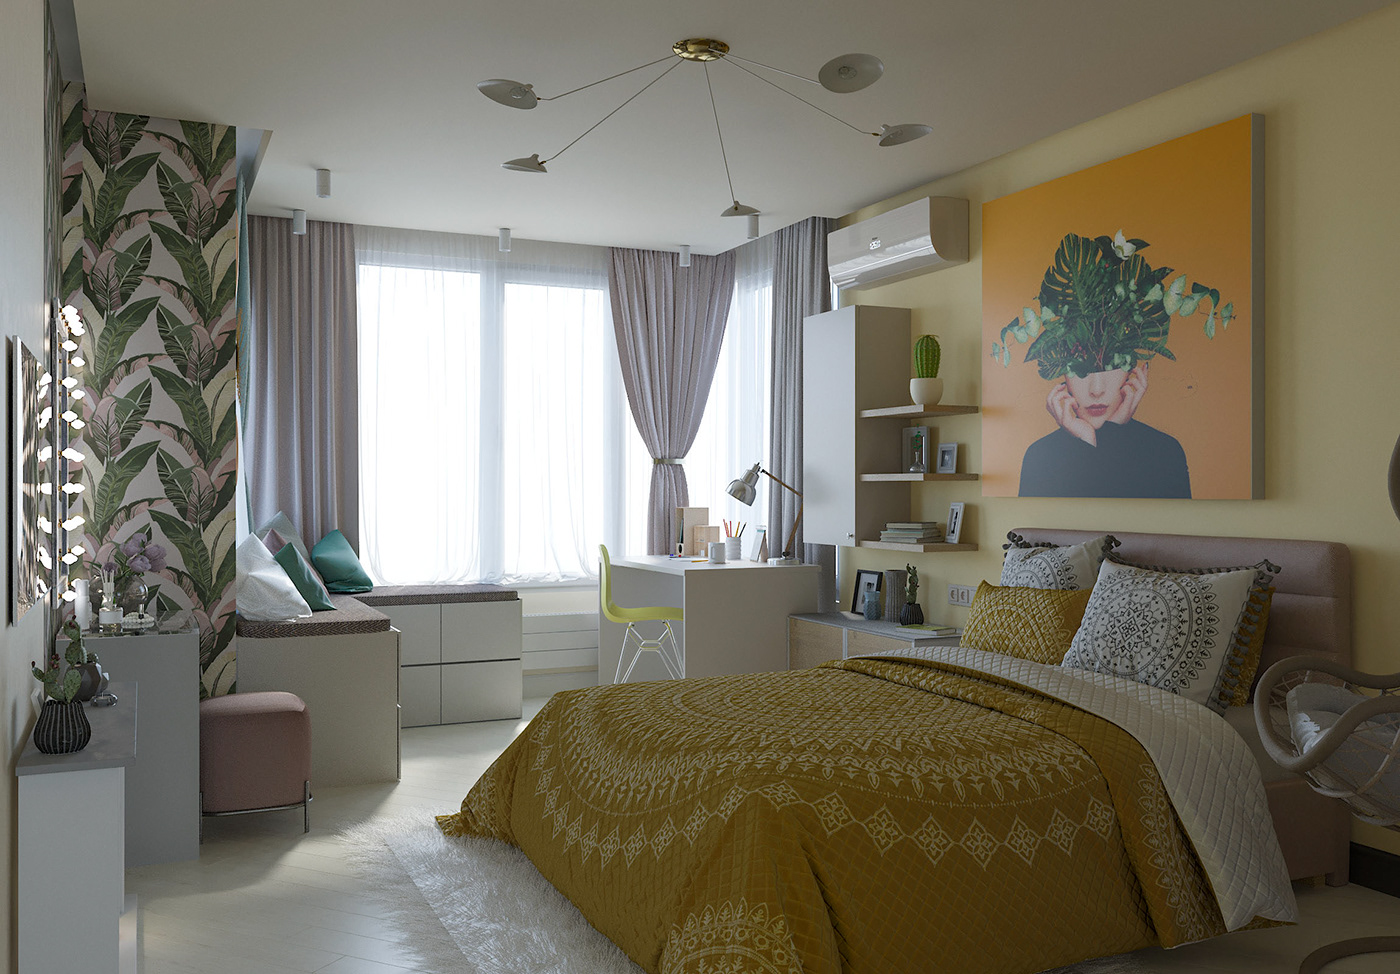 corona corona render  design Interior 3dsmax дизайн детской спальня детская комната bedroom